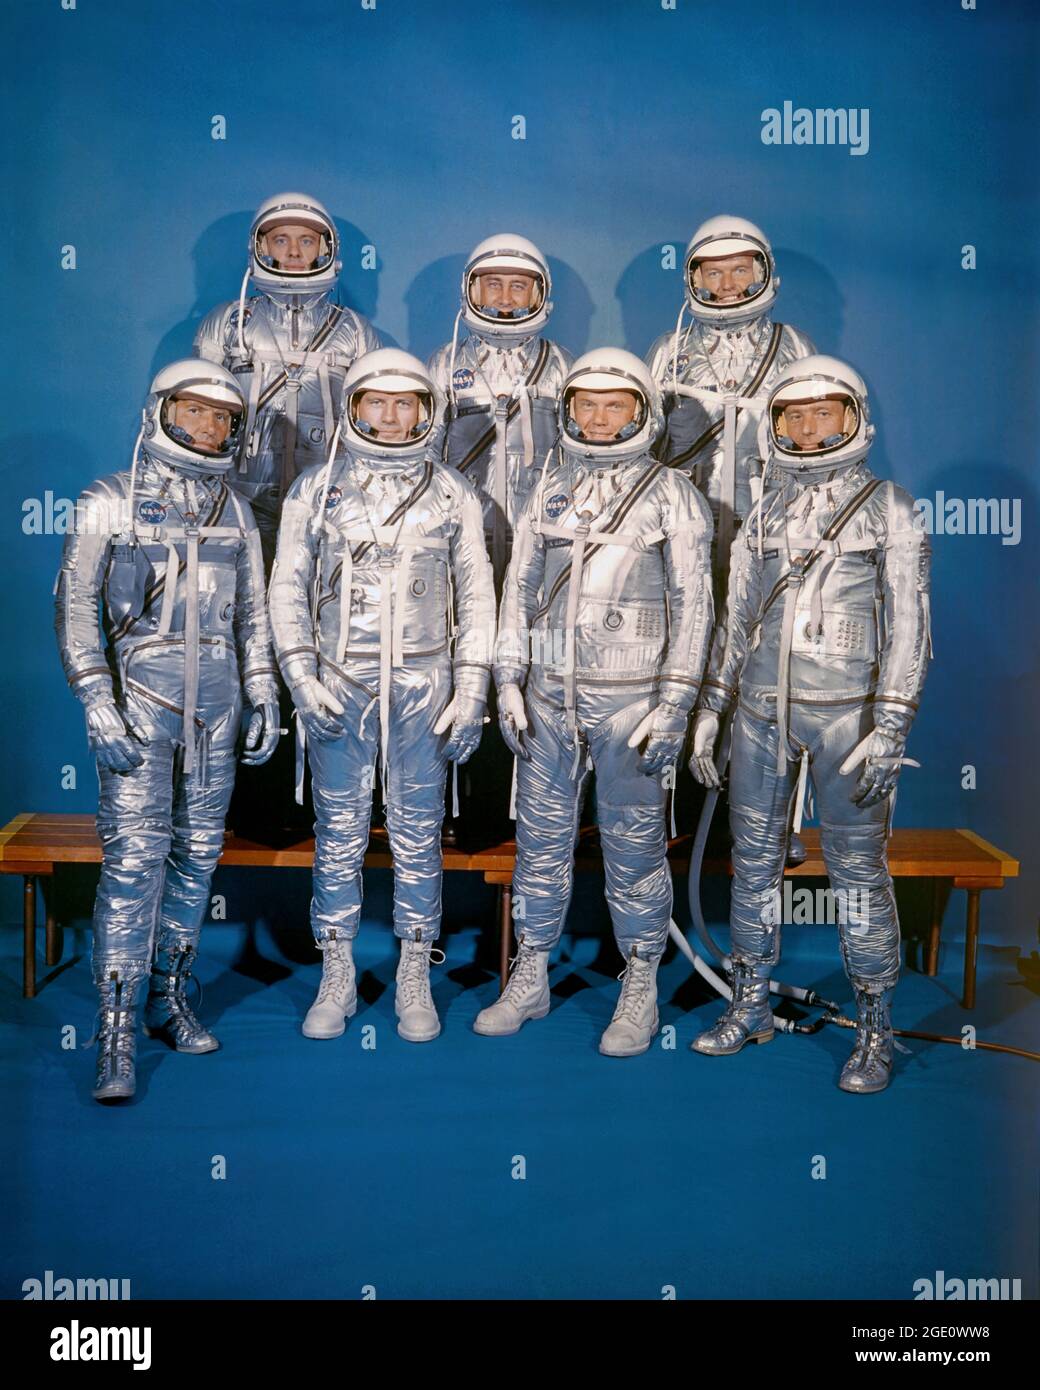 Der Mercury 7 am 9. April 1959 stellte die NASA ihre erste Astronautenklasse vor, den Mercury 7. Dieses Bild hat der Fotograf DES Life-Magazins Ralph Morse am 17. März 1960 im Gebäude des Atmospheric Wind Tunnels im Langley Research Center aufgenommen. Vordere Reihe, von links nach rechts: Walter M. Schirra, Jr., Donald K. 'Deke' Slayton, John H. Glenn, Jr. und M. Scott Karpenter; hintere Reihe, Alan B. Shepard, Jr., Virgil I. 'Gus' Grissom und L. Gordon Cooper, Jr. Stockfoto